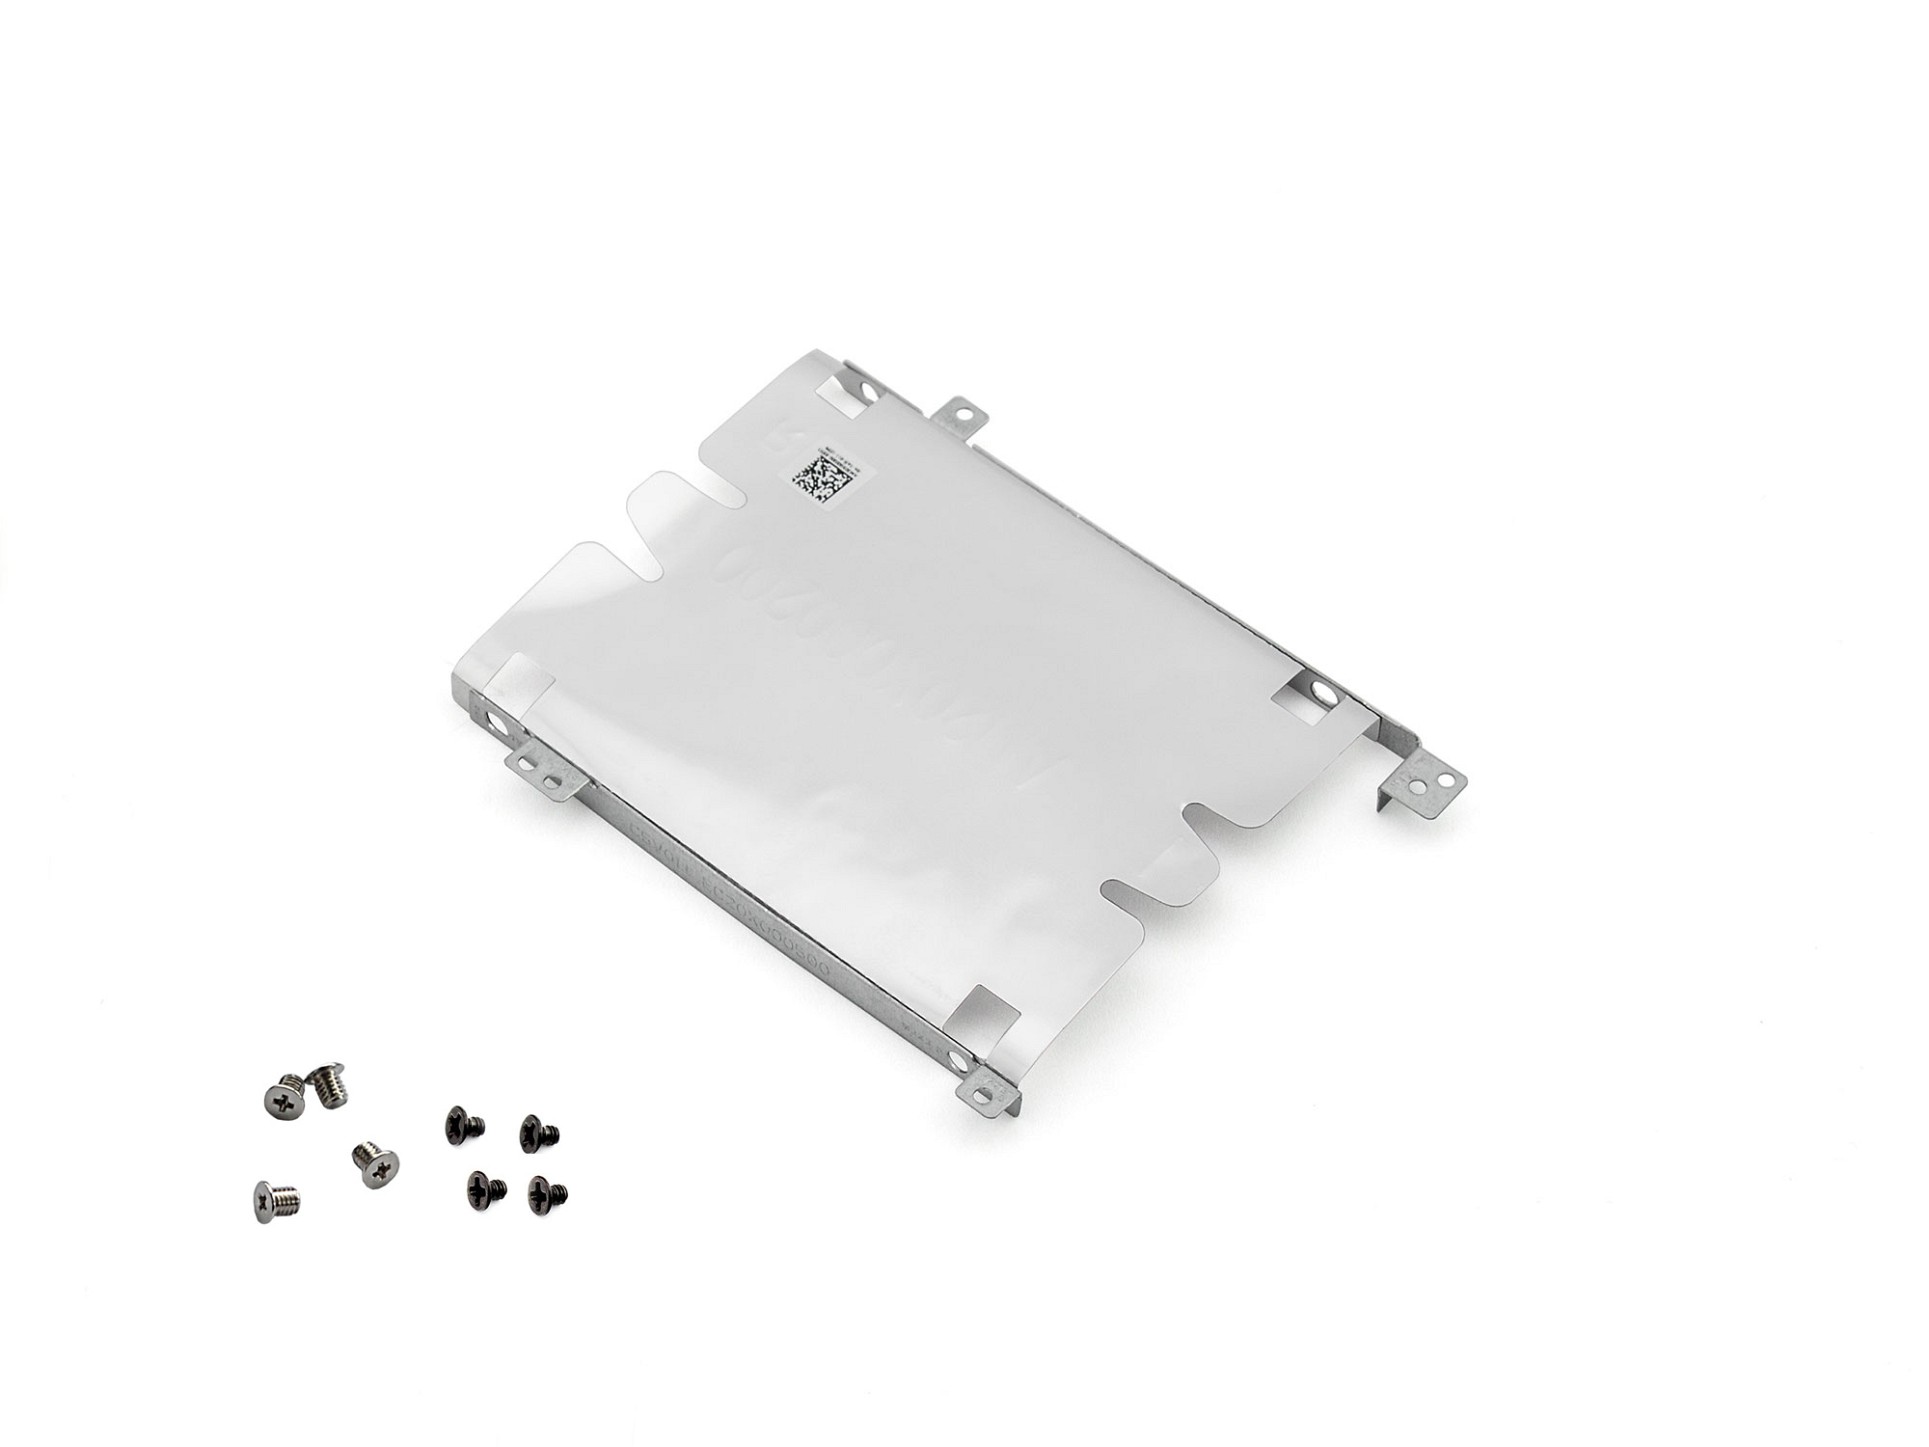 Festplatten-Einbaurahmen für den 2. Festplatten Schacht inkl. Schrauben Original für Acer Nitro 5 (AN515-53)